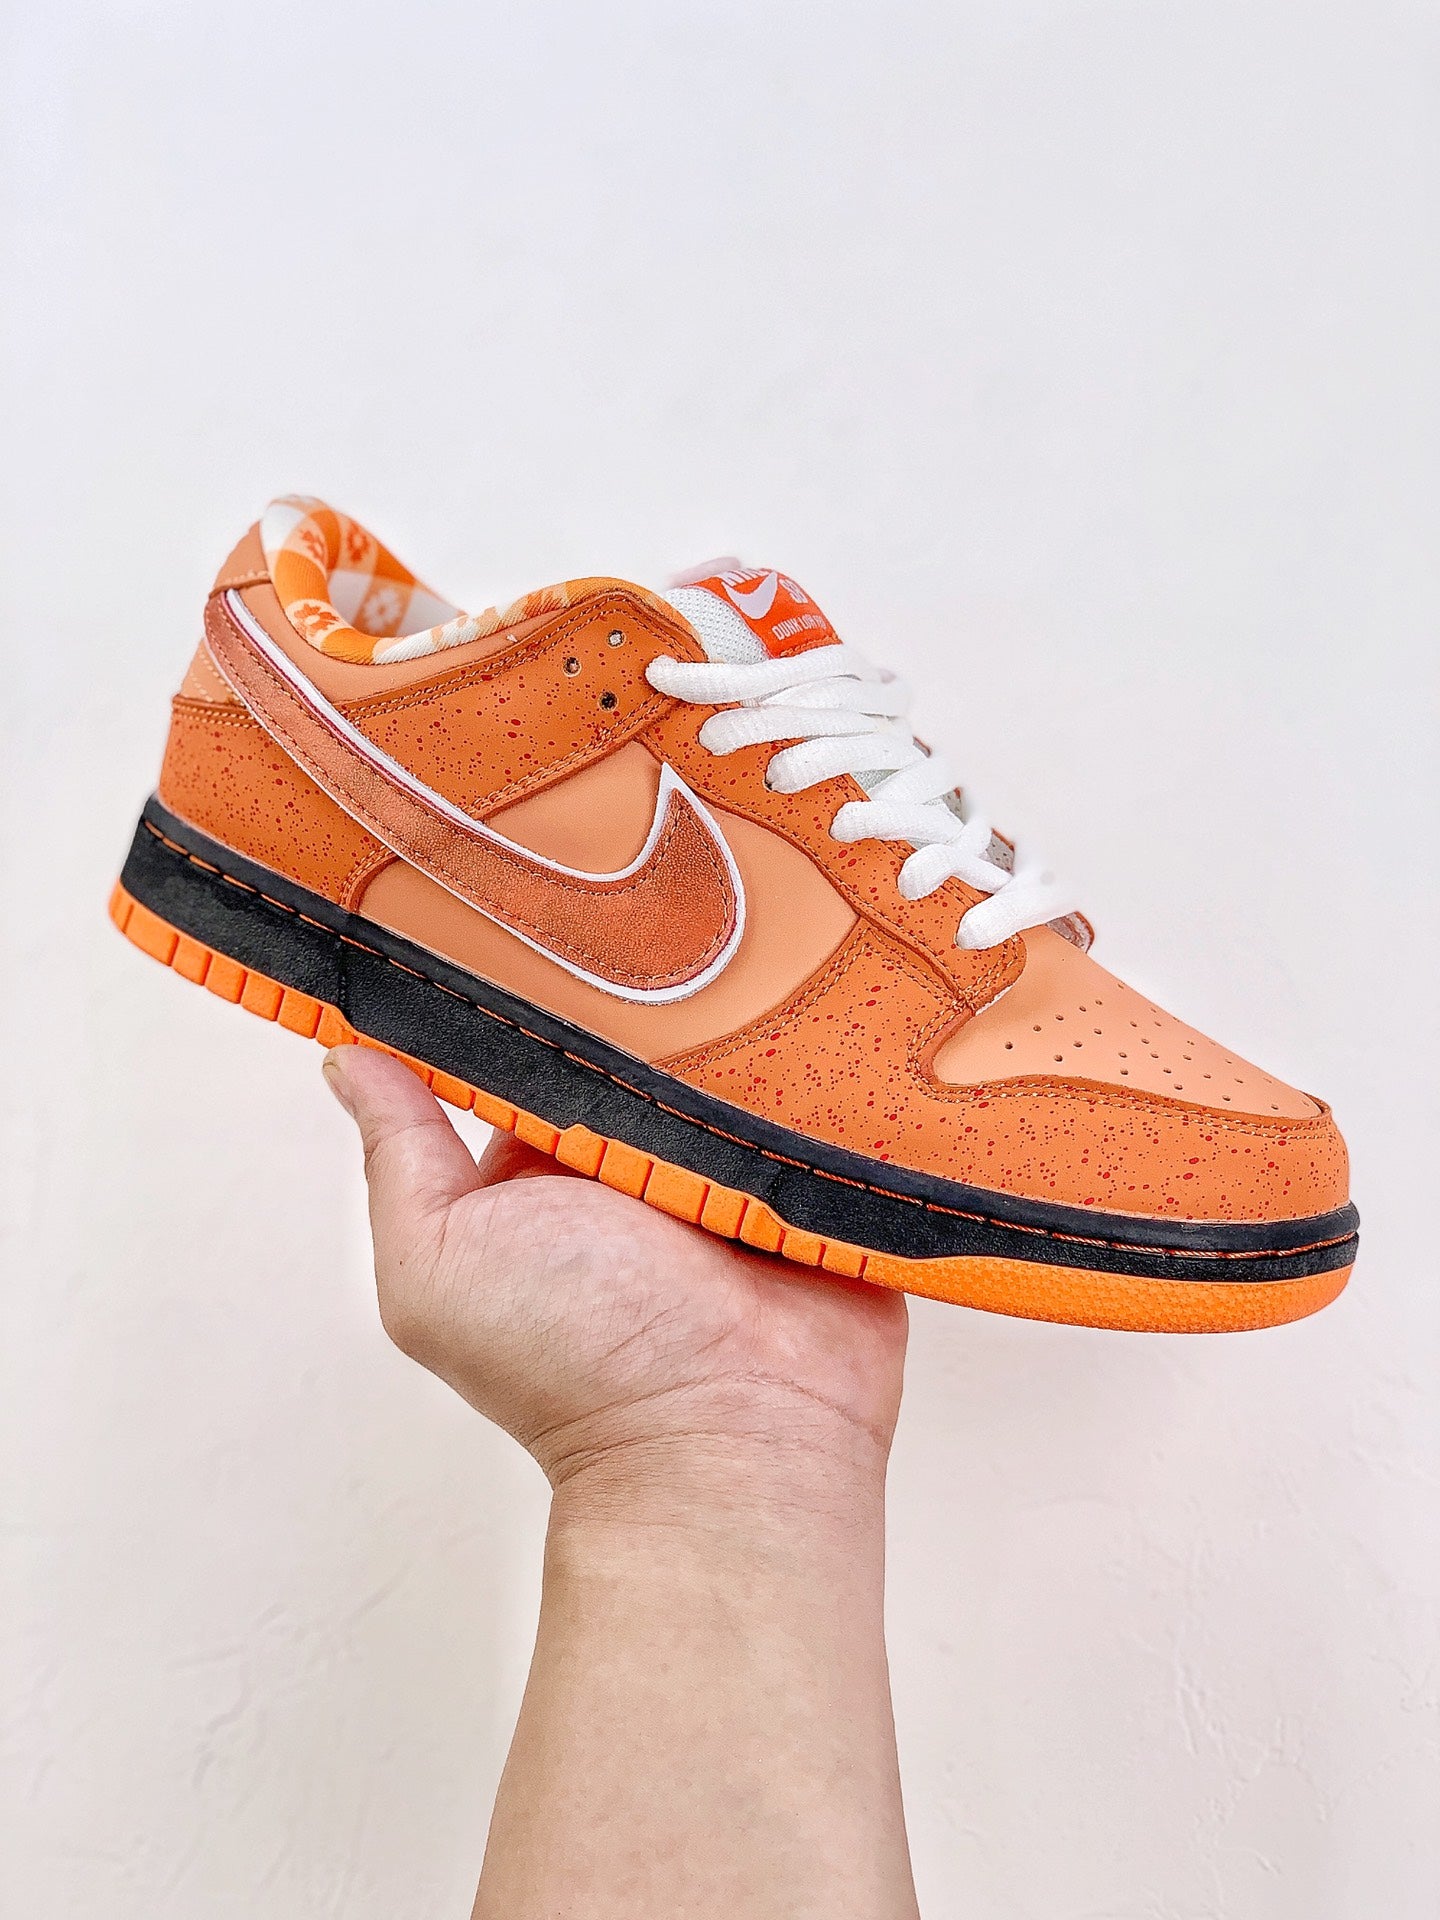 Nike SB Dunk Low "Orange "